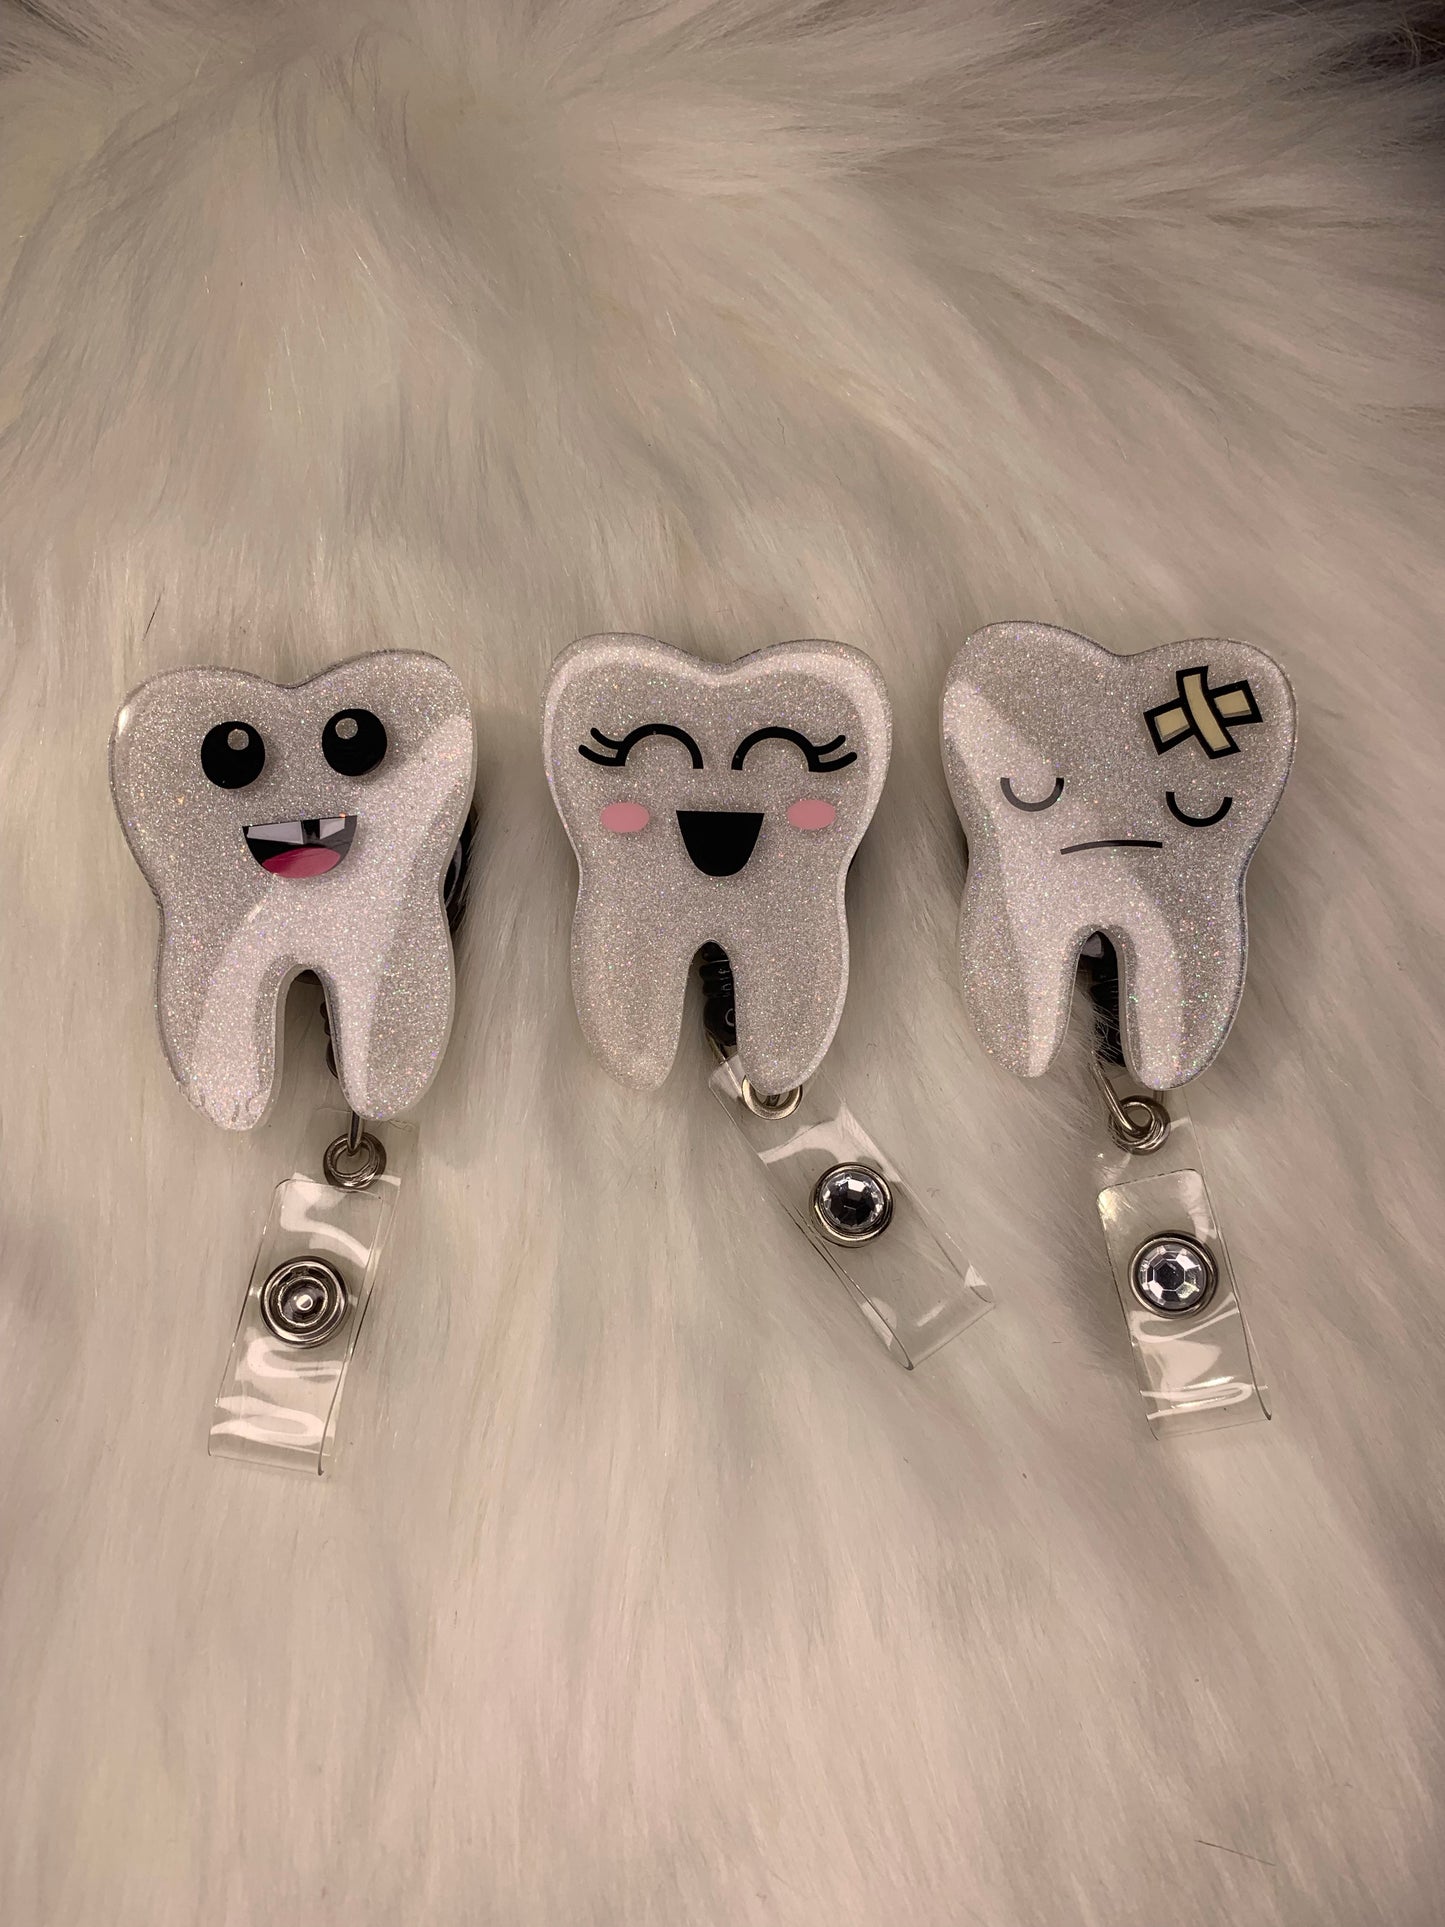 Cute tooth badge reels 